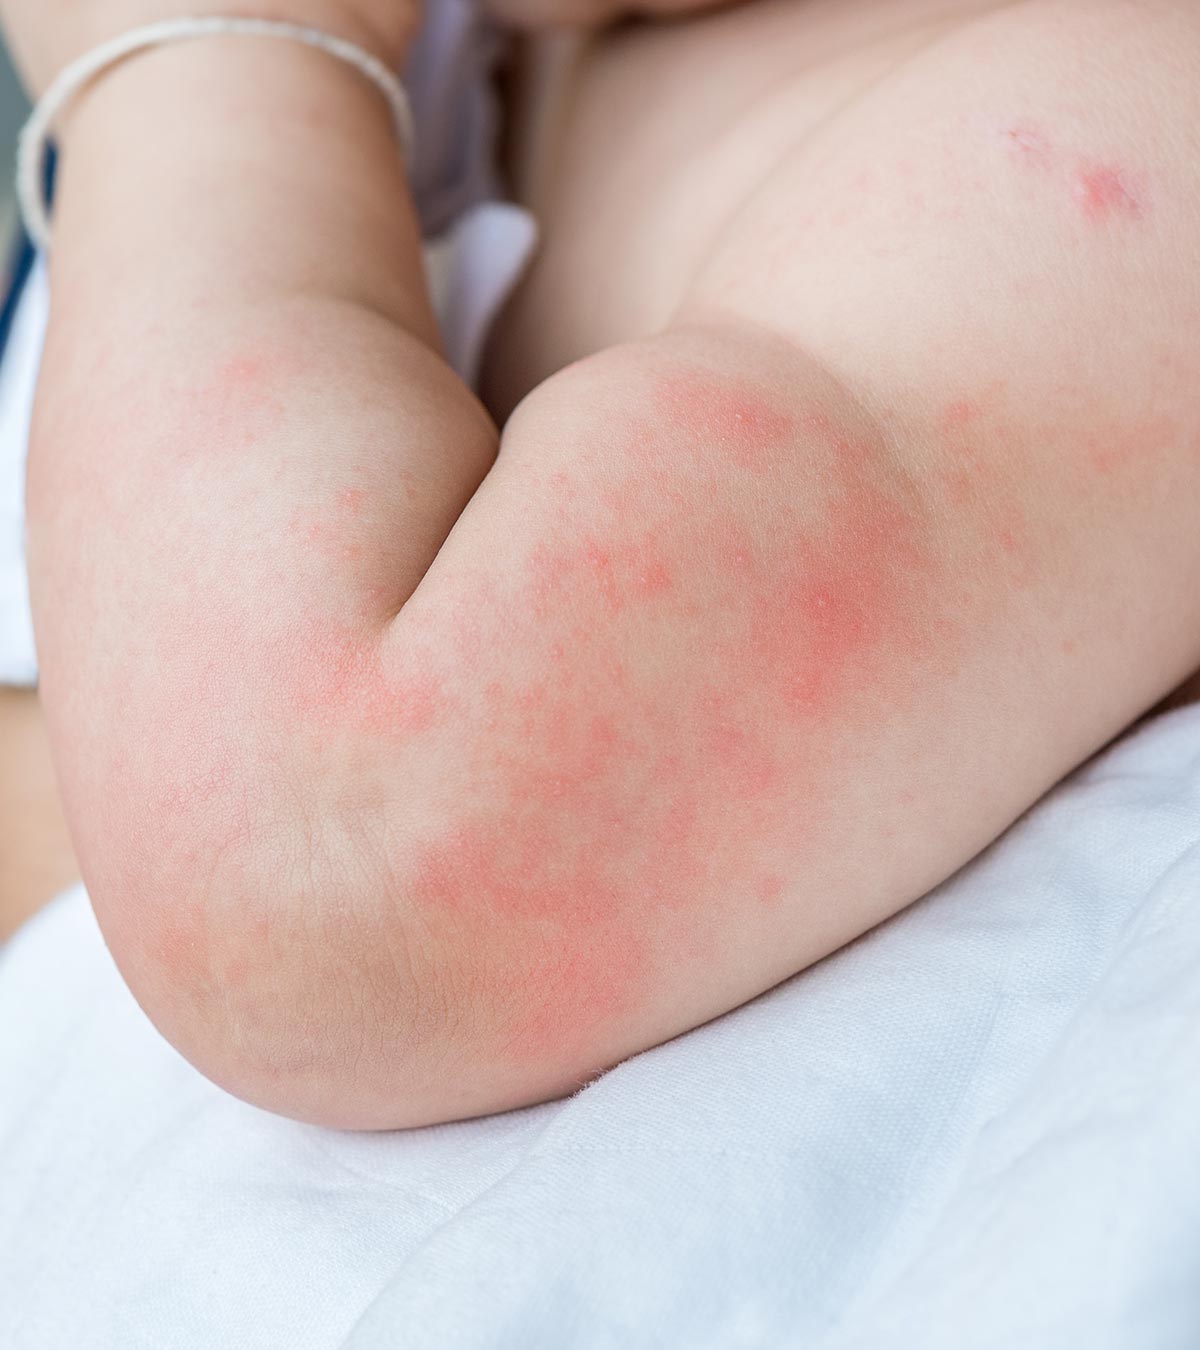 婴儿的荨麻疹:原因、症状、治疗和预防